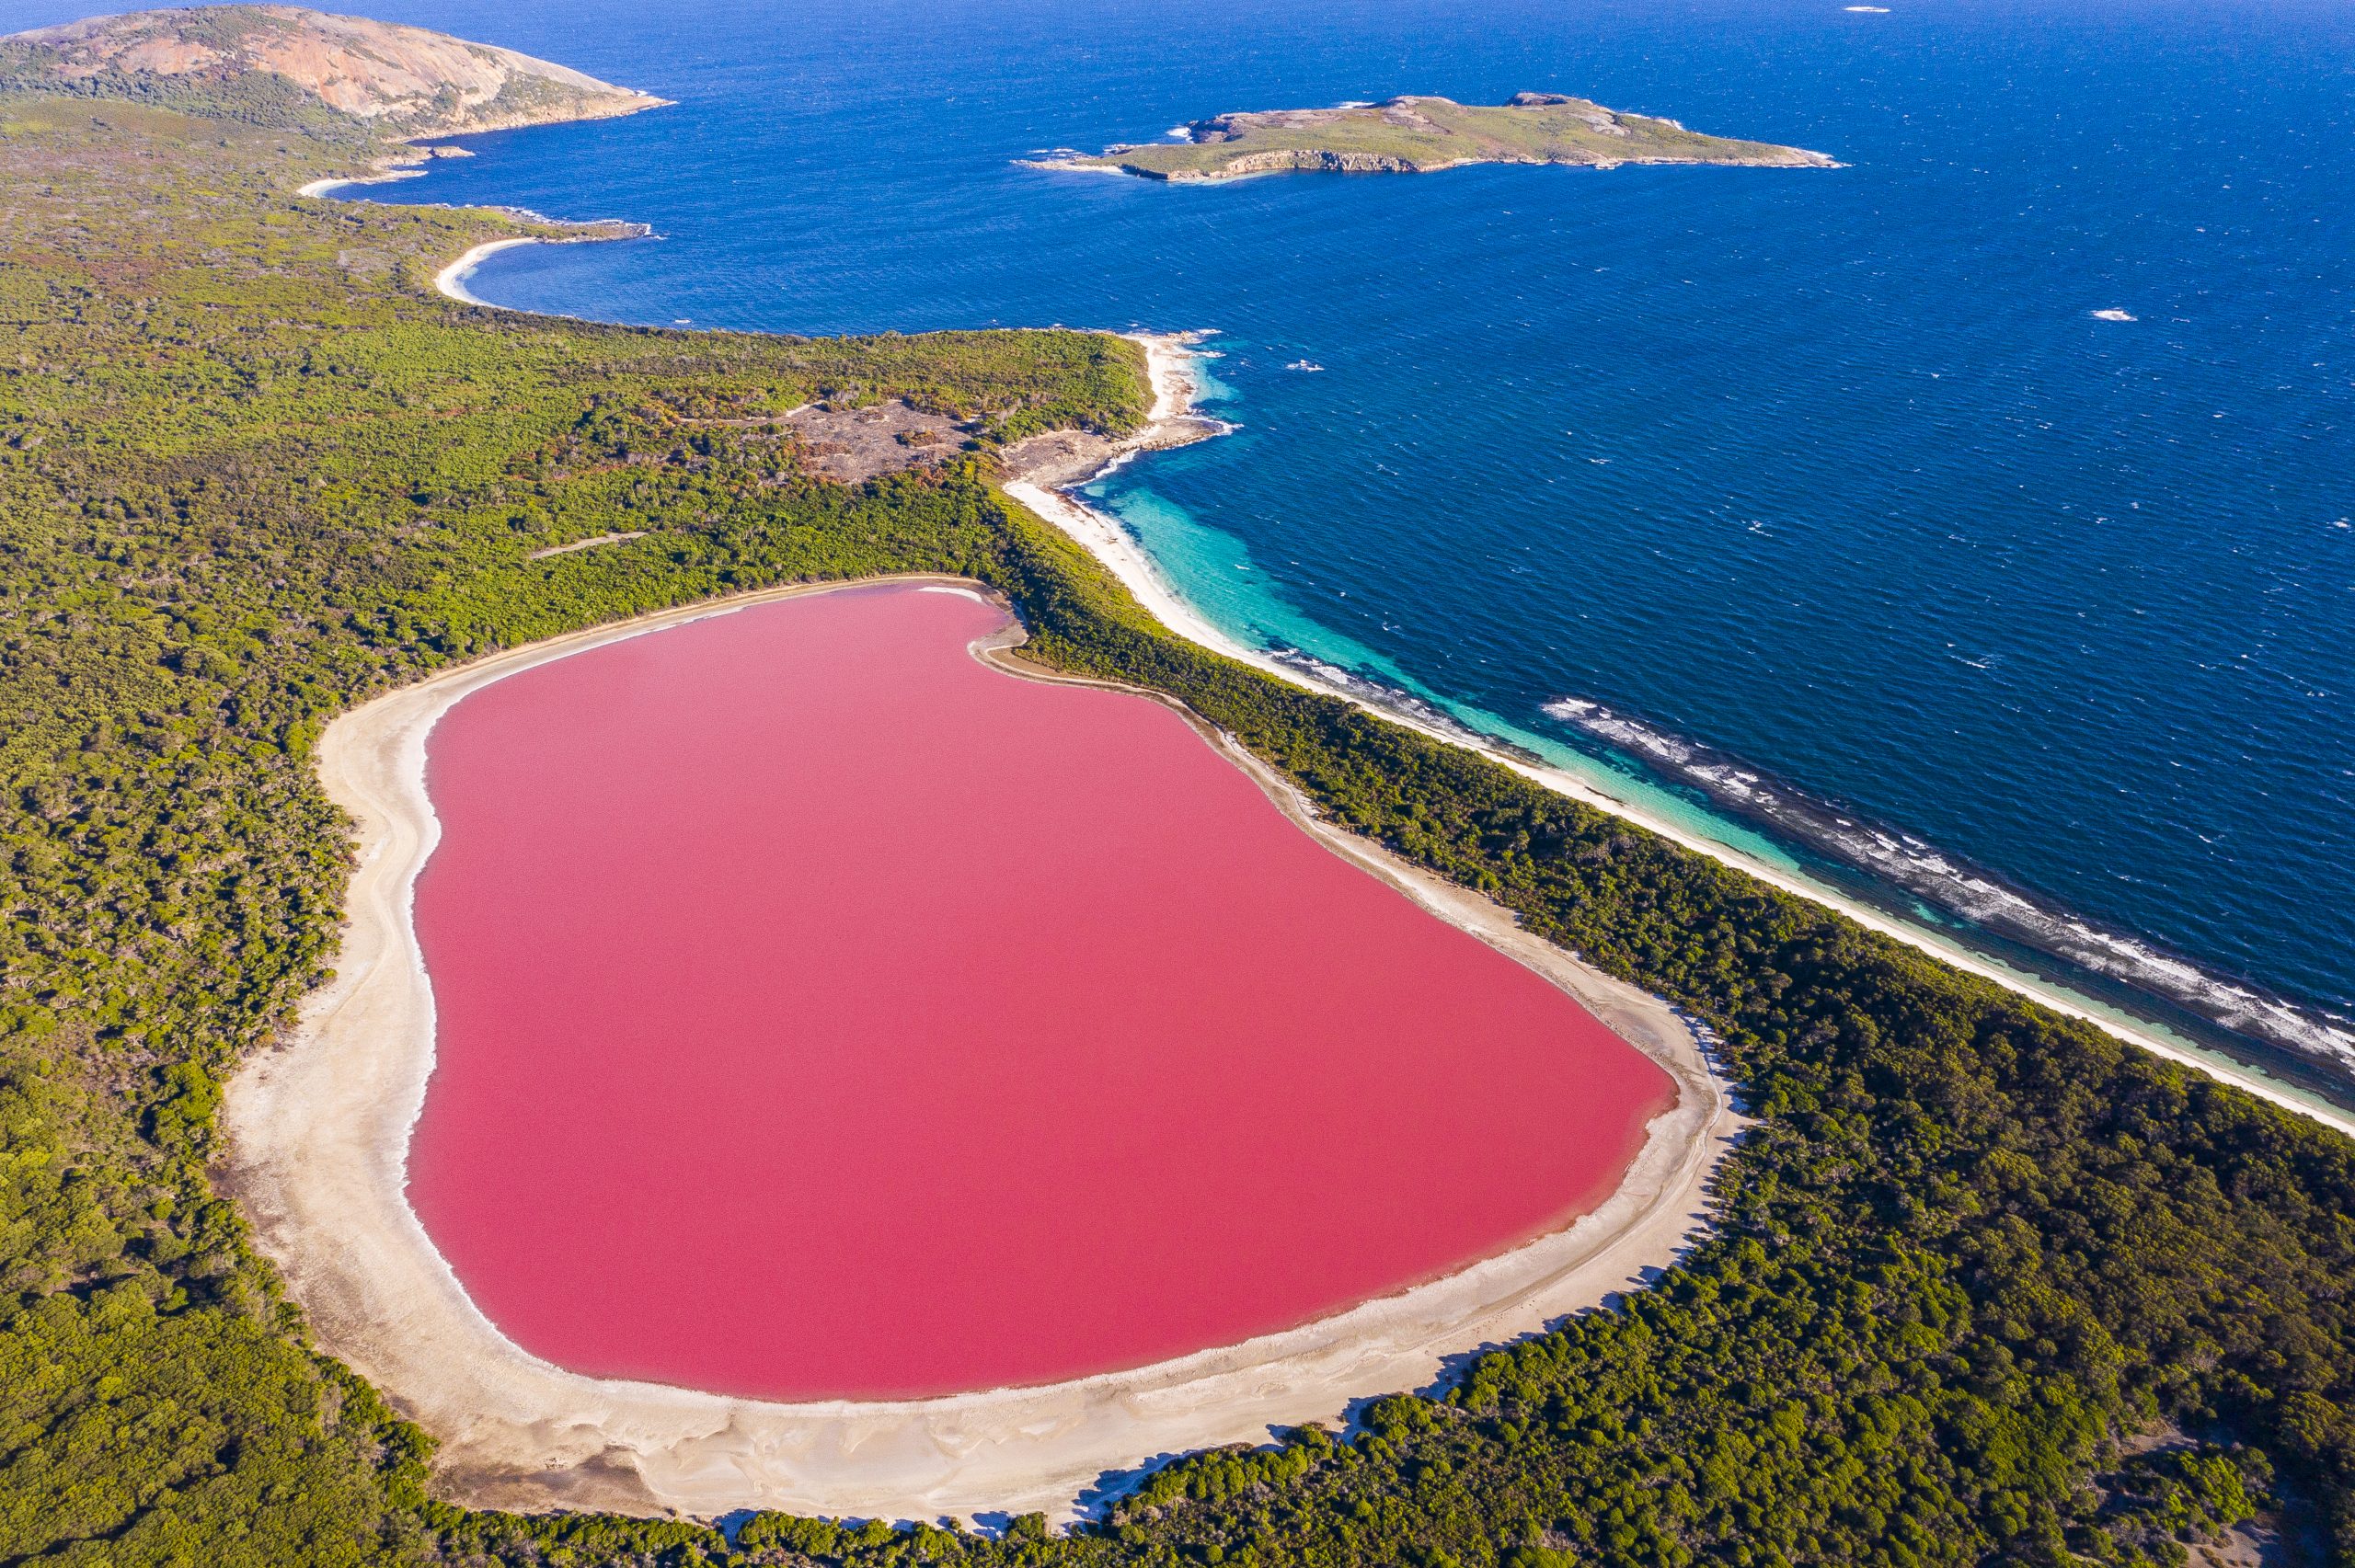 Есть розовое озеро. Озеро Хиллиер, Австралия. Озеро Хиллер (hillier), Австралия. Озеро Хиллер (остров Миддл). Розовое озеро Хиллер Австралия.